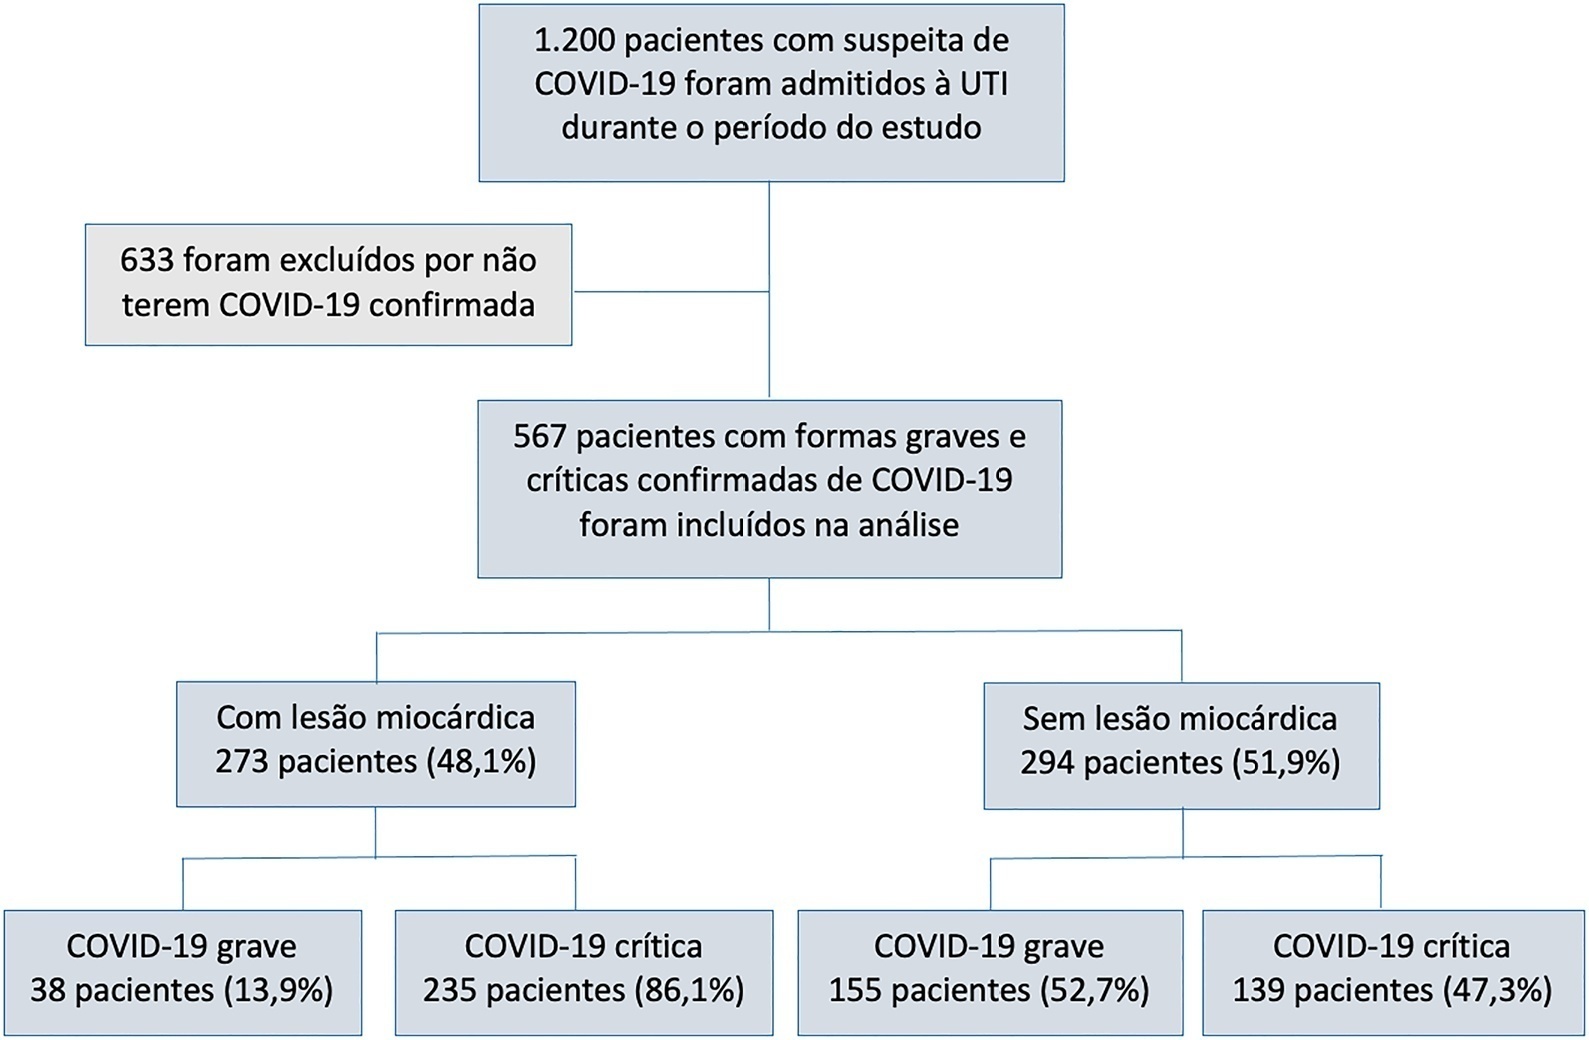 Lesão miocárdica e complicações cardiovasculares na COVID-19: estudo de coorte em pacientes graves e críticos